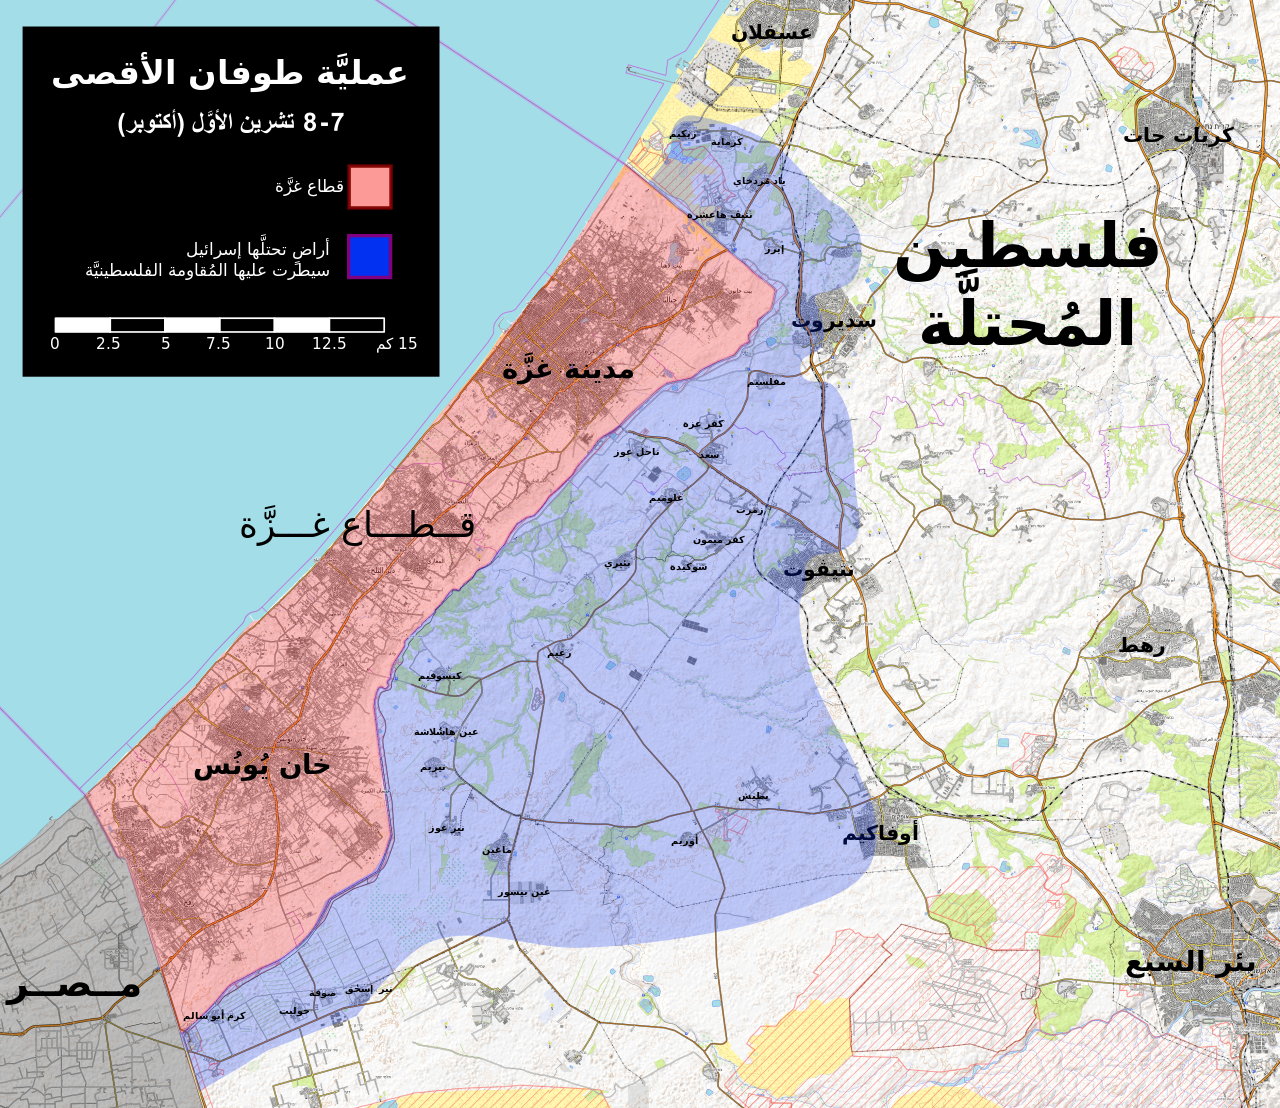 الوضع الميداني في غلاف غزة بين 7 و8 أكتوبر، بعد اجتياح المقاومة للحاج وسيطرتها على عدد من المستوطنات - المصدر/ ويكيبيديا